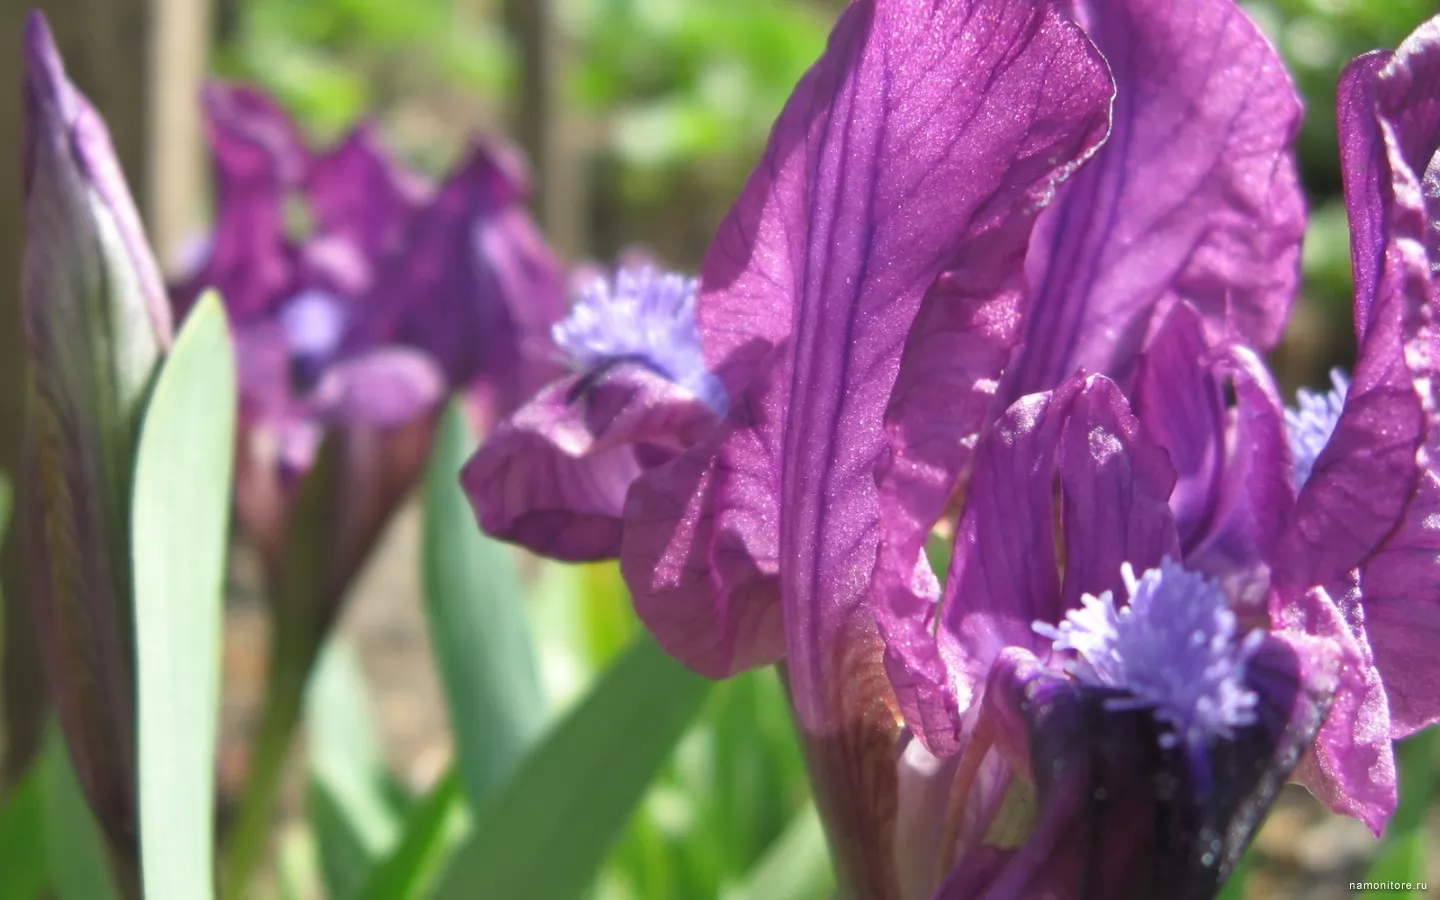 Light of an iris, flowers, violet x